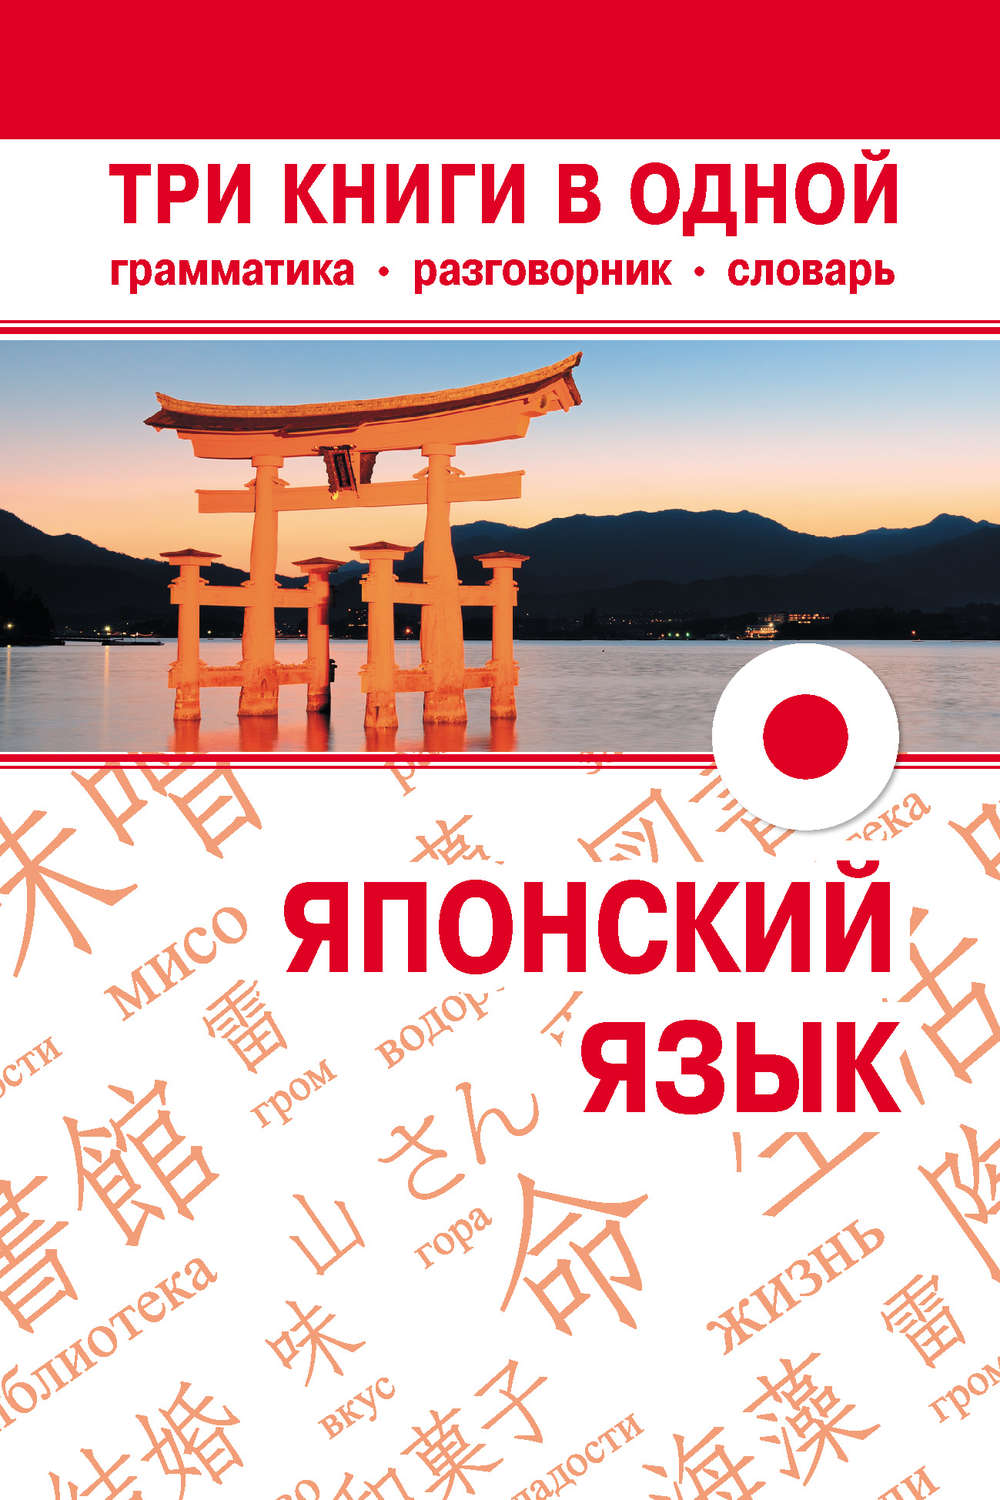 Русско японский переводчик по фото онлайн бесплатно